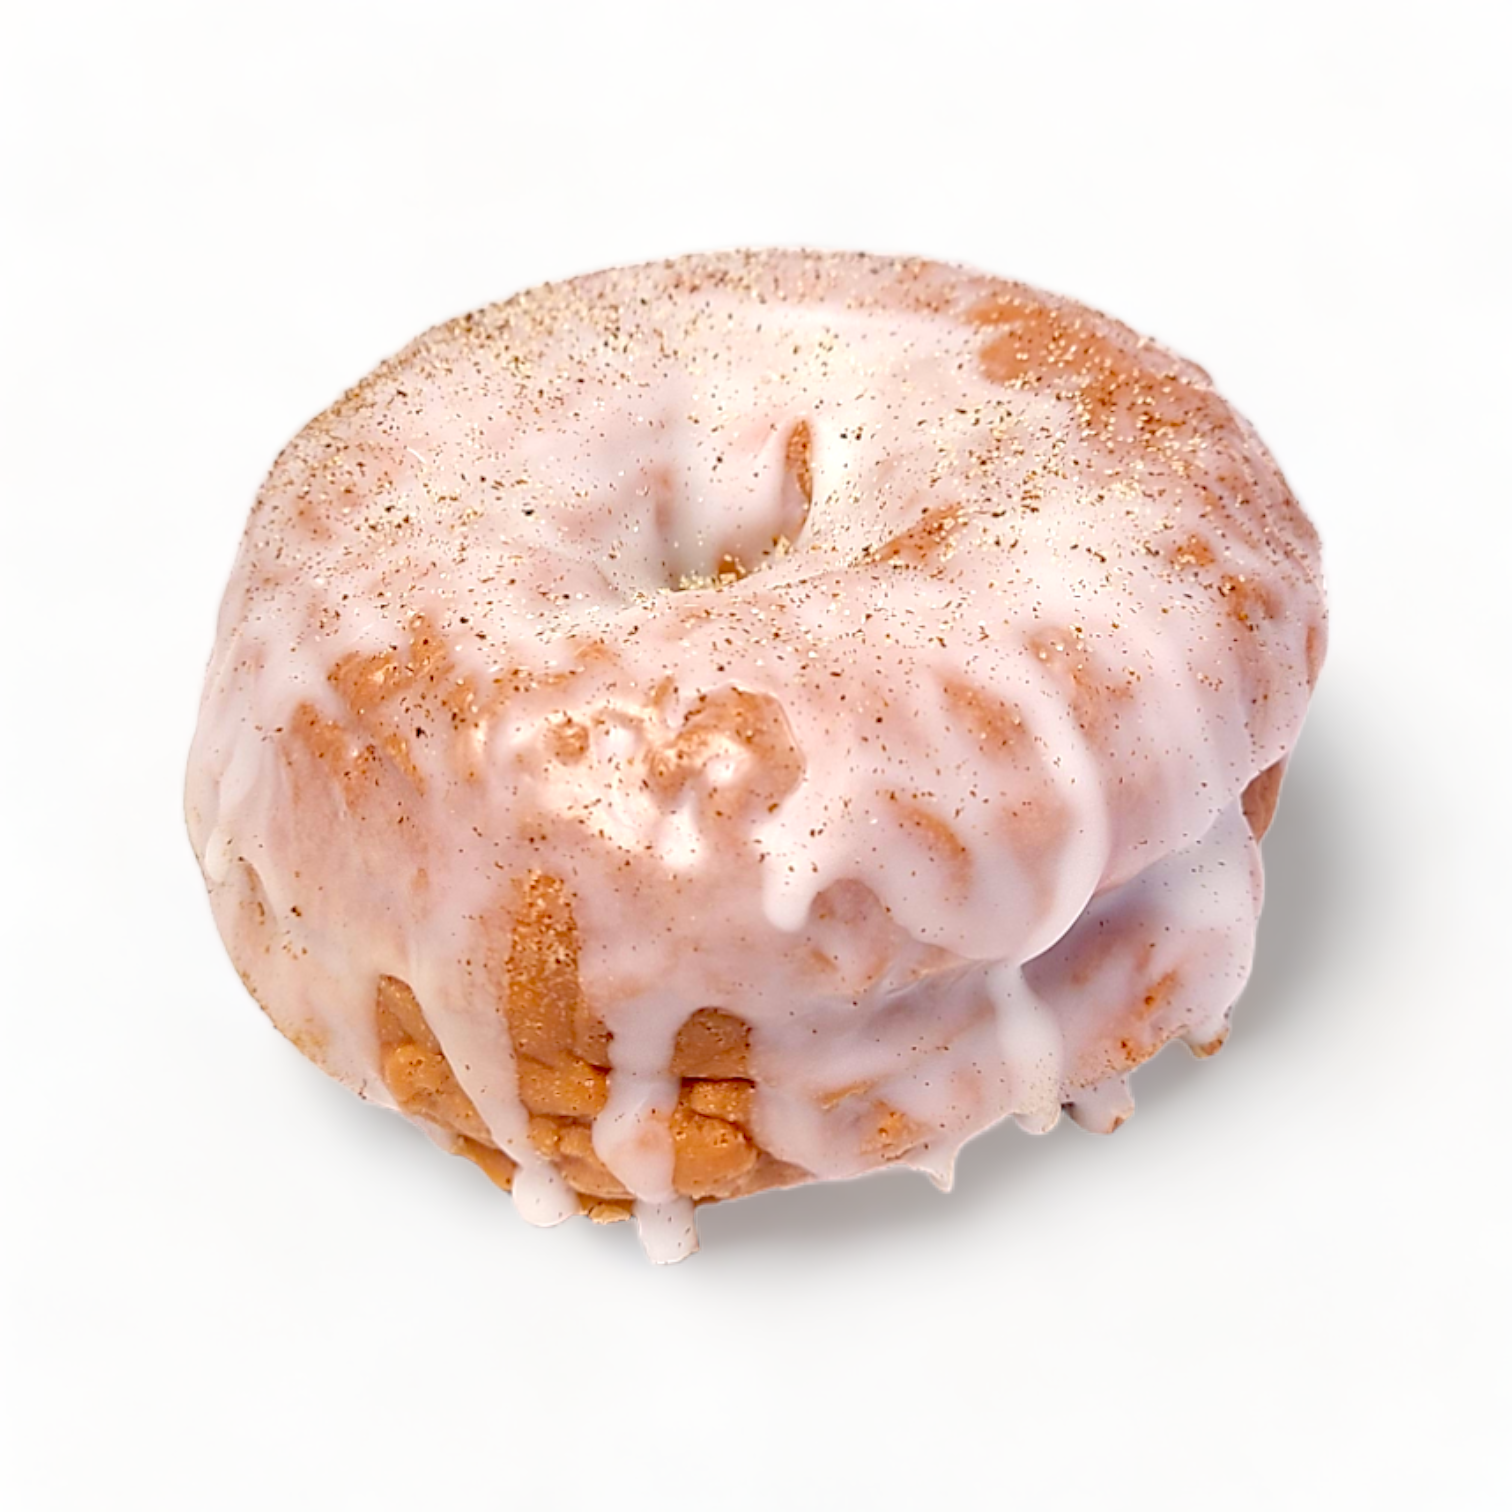 Maple Glazed Pumpkin Spice Cake Donut - 3.4oz